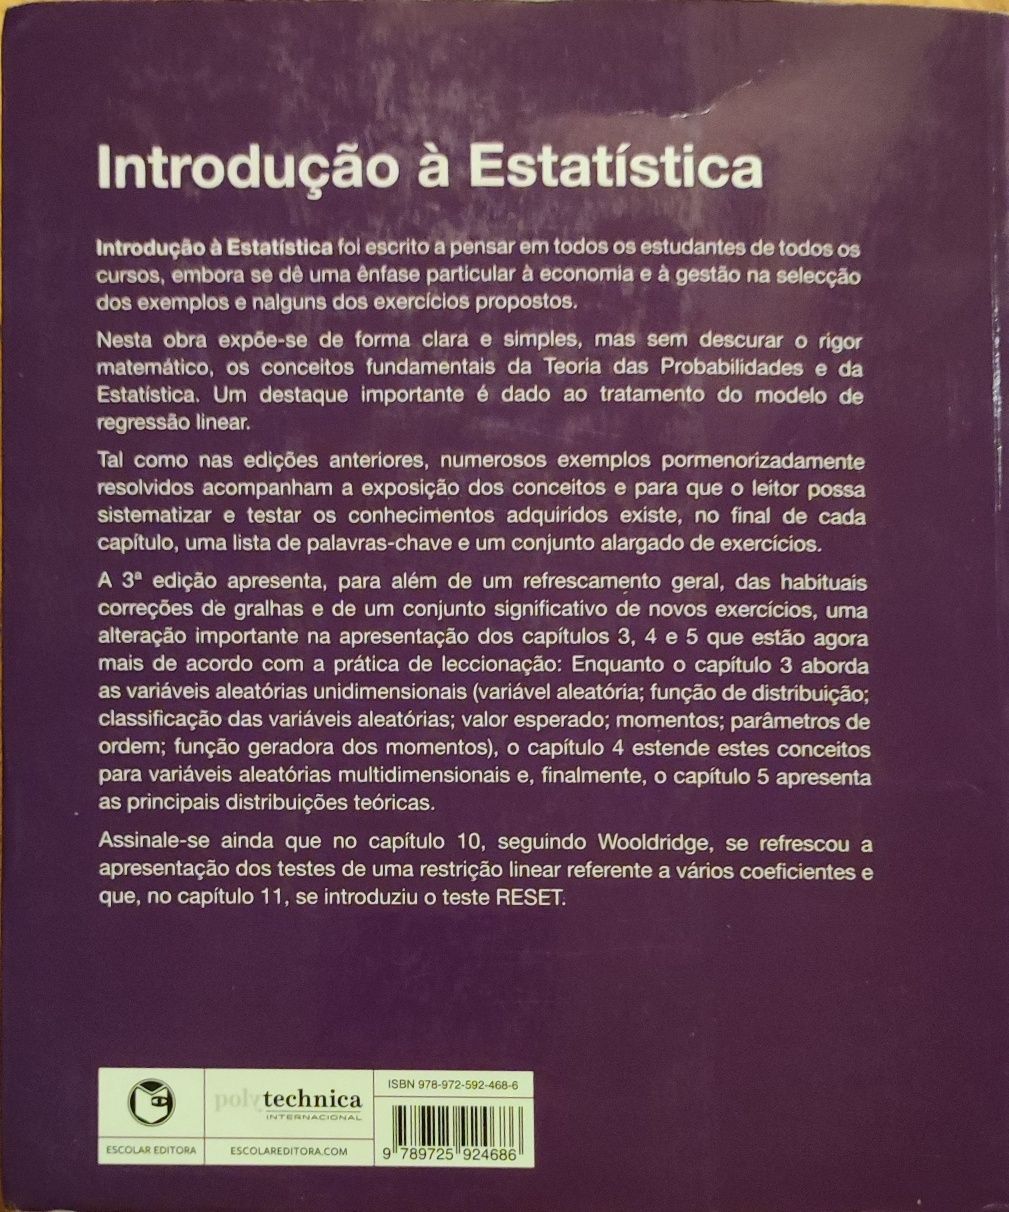 Livro "Introdução à Estatística" de Murteira